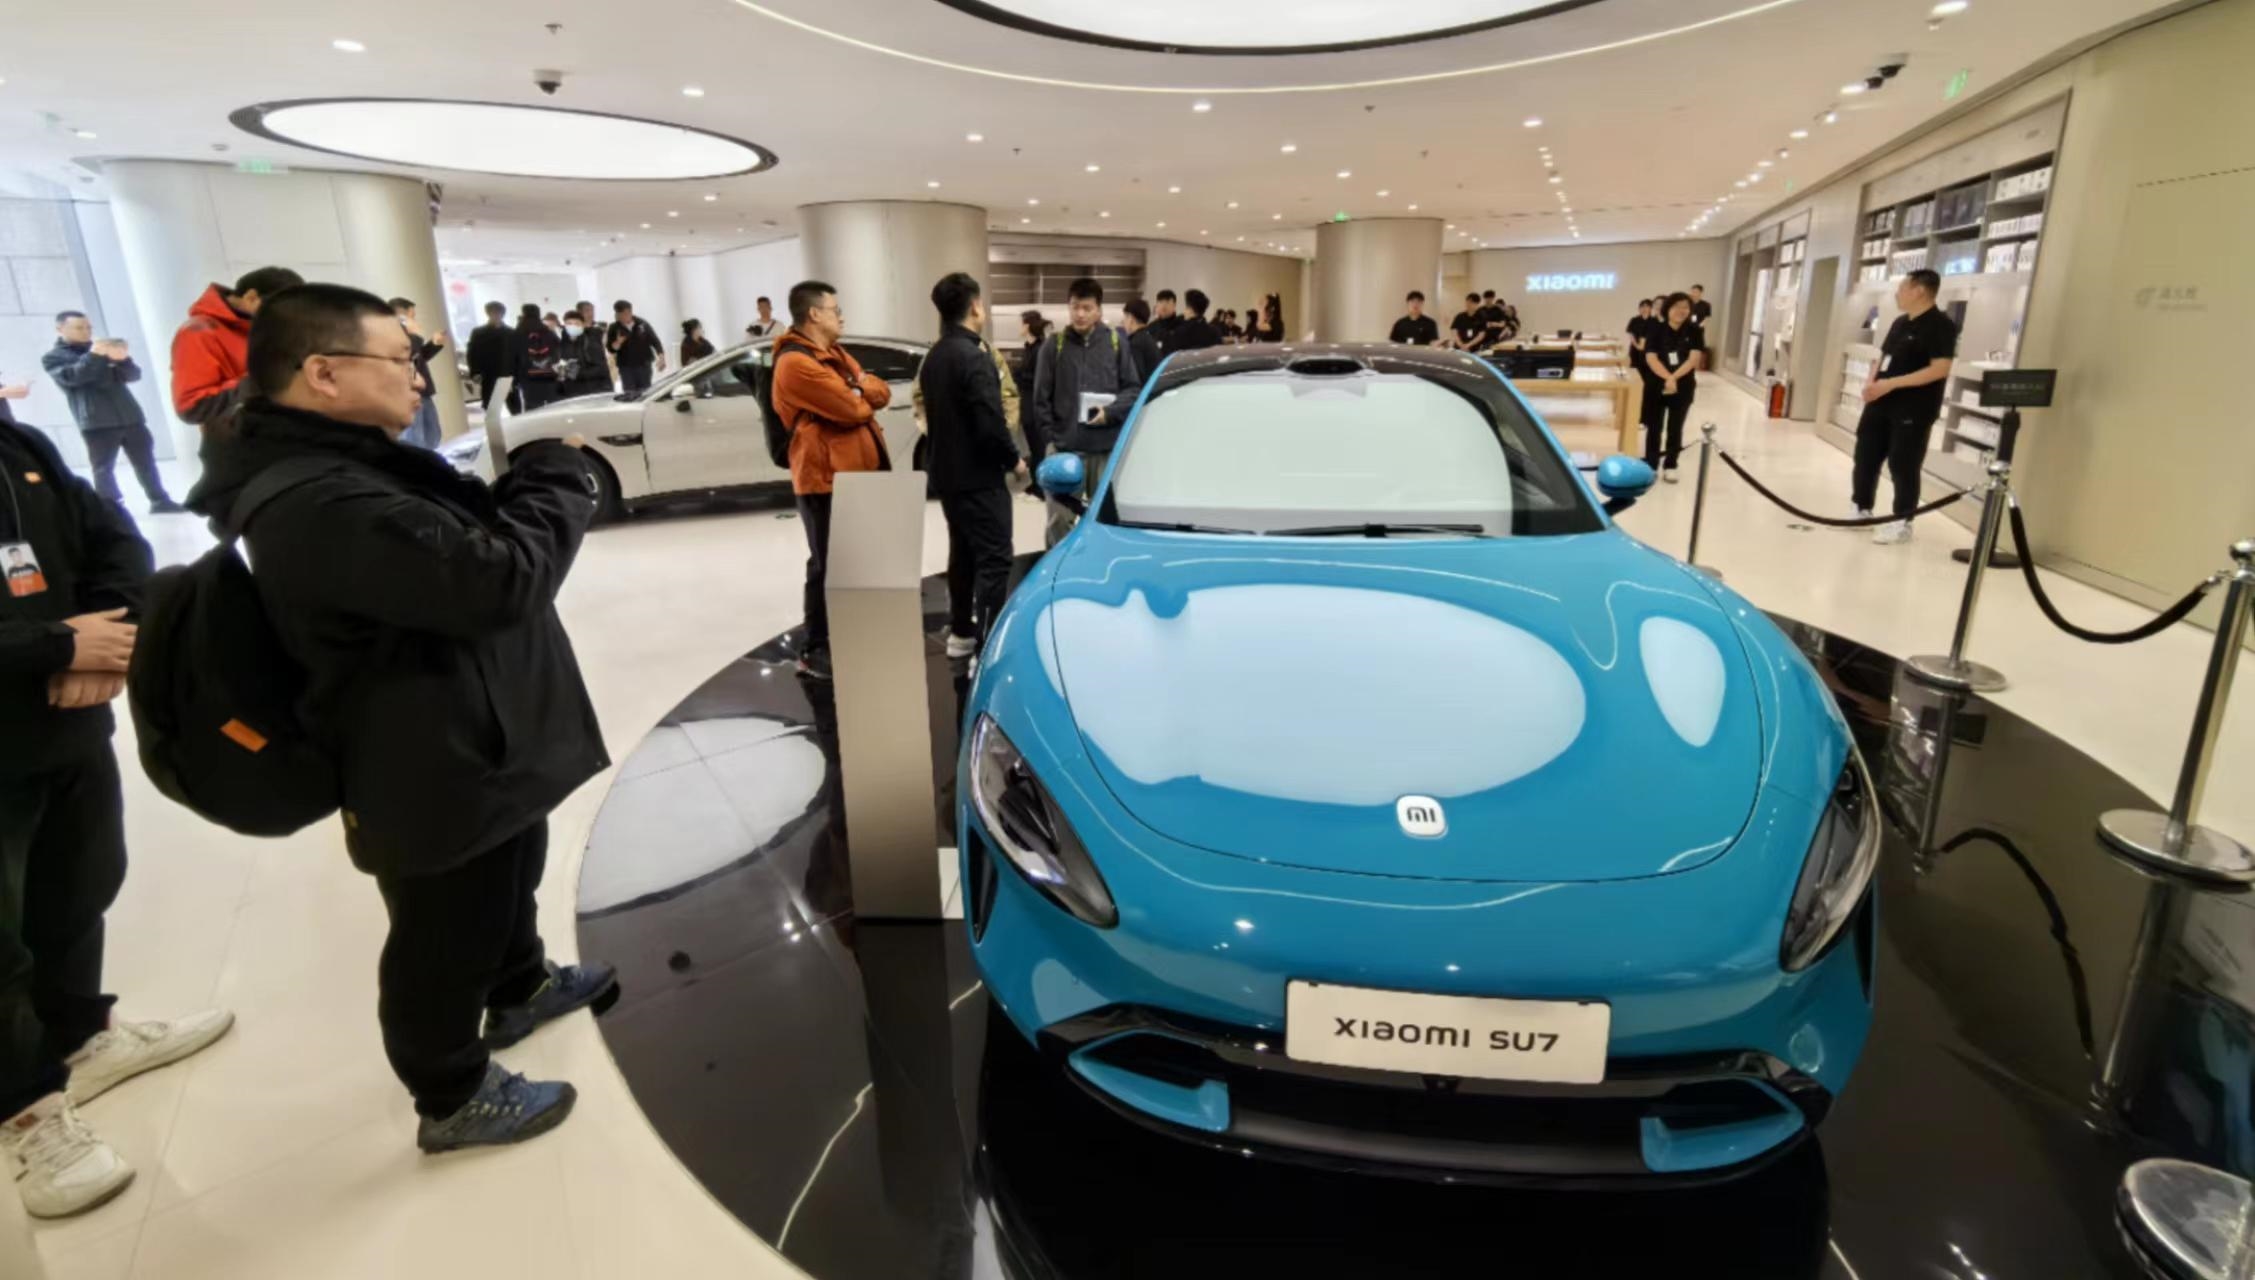 單店預約看車人數逾400 銷售人員：小米SU7價格可參考Model 3